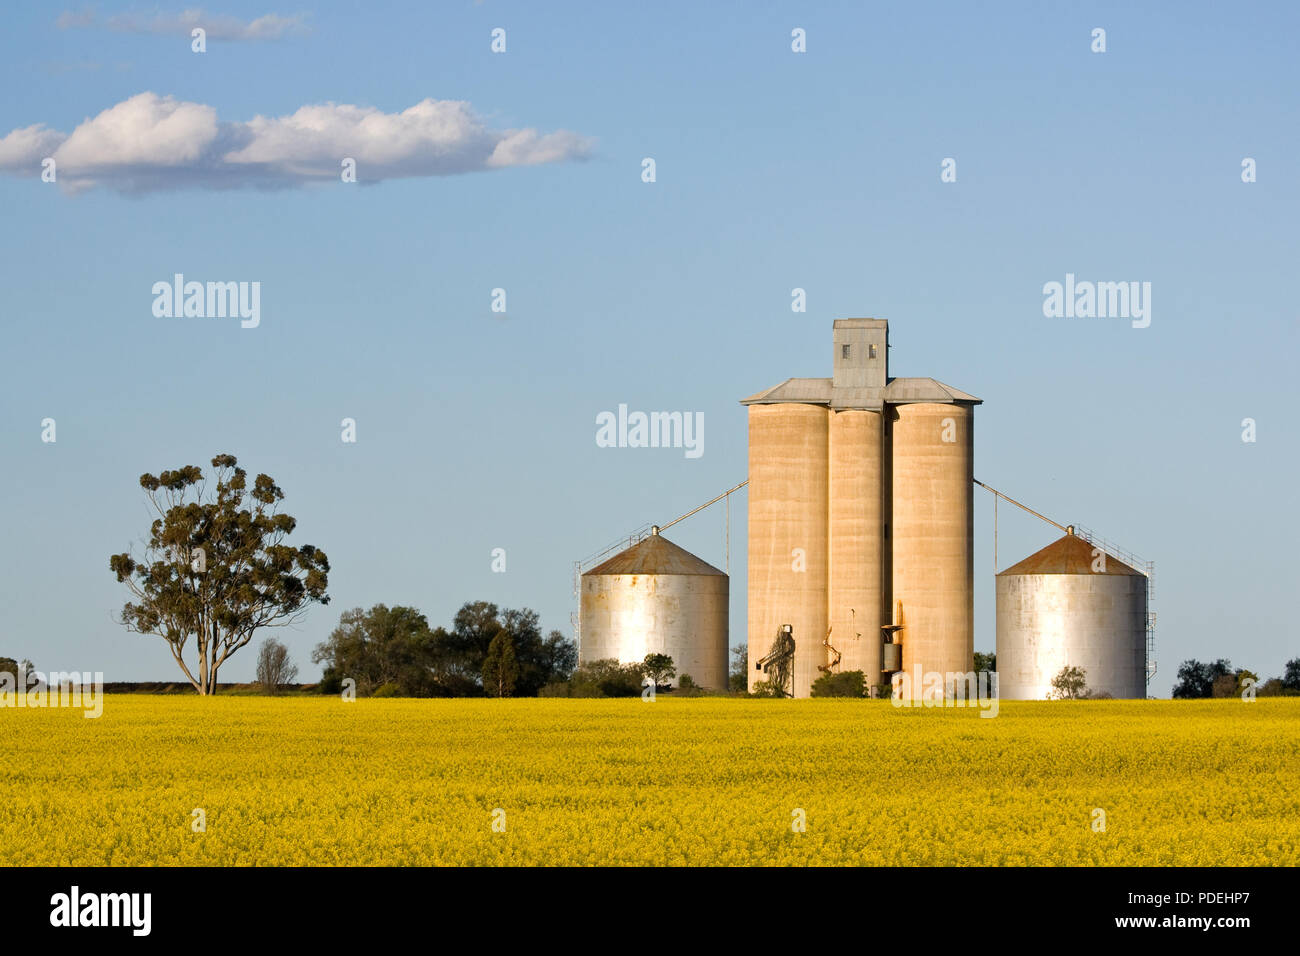 Silo élévateur à grain, région de Wimmera Victoria Australie. Banque D'Images